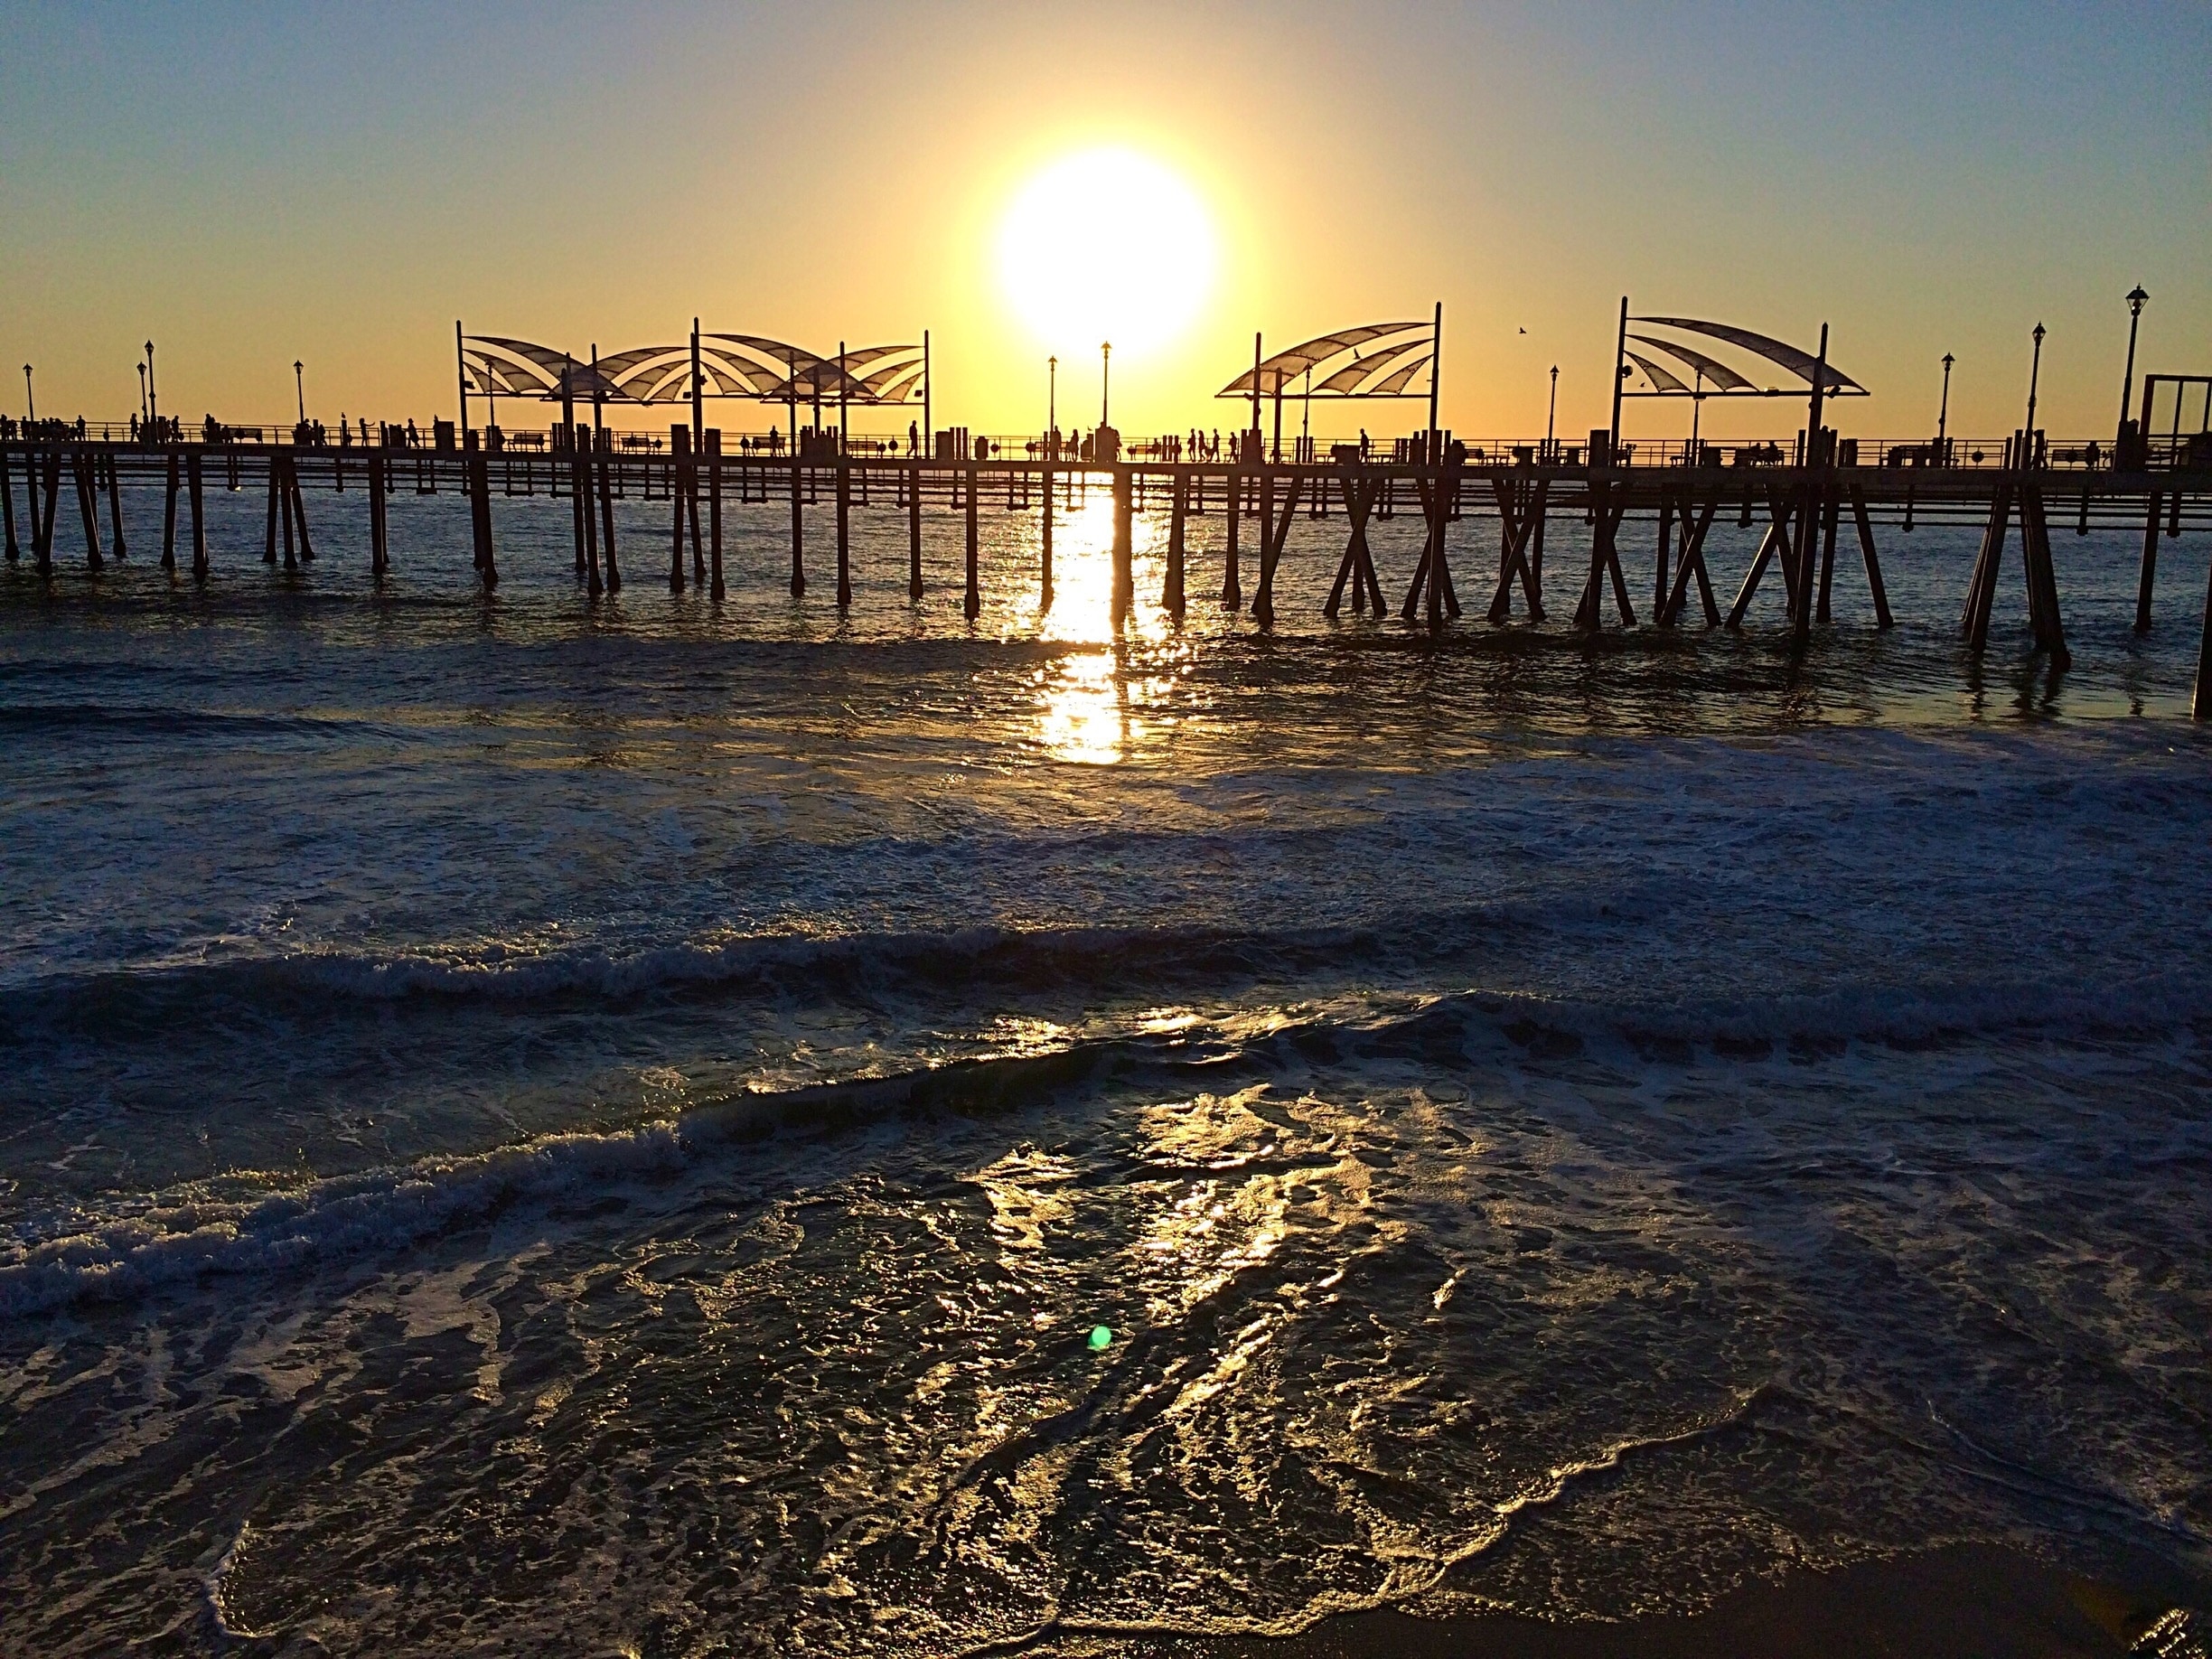 Sunset
Redondo Beach CA 